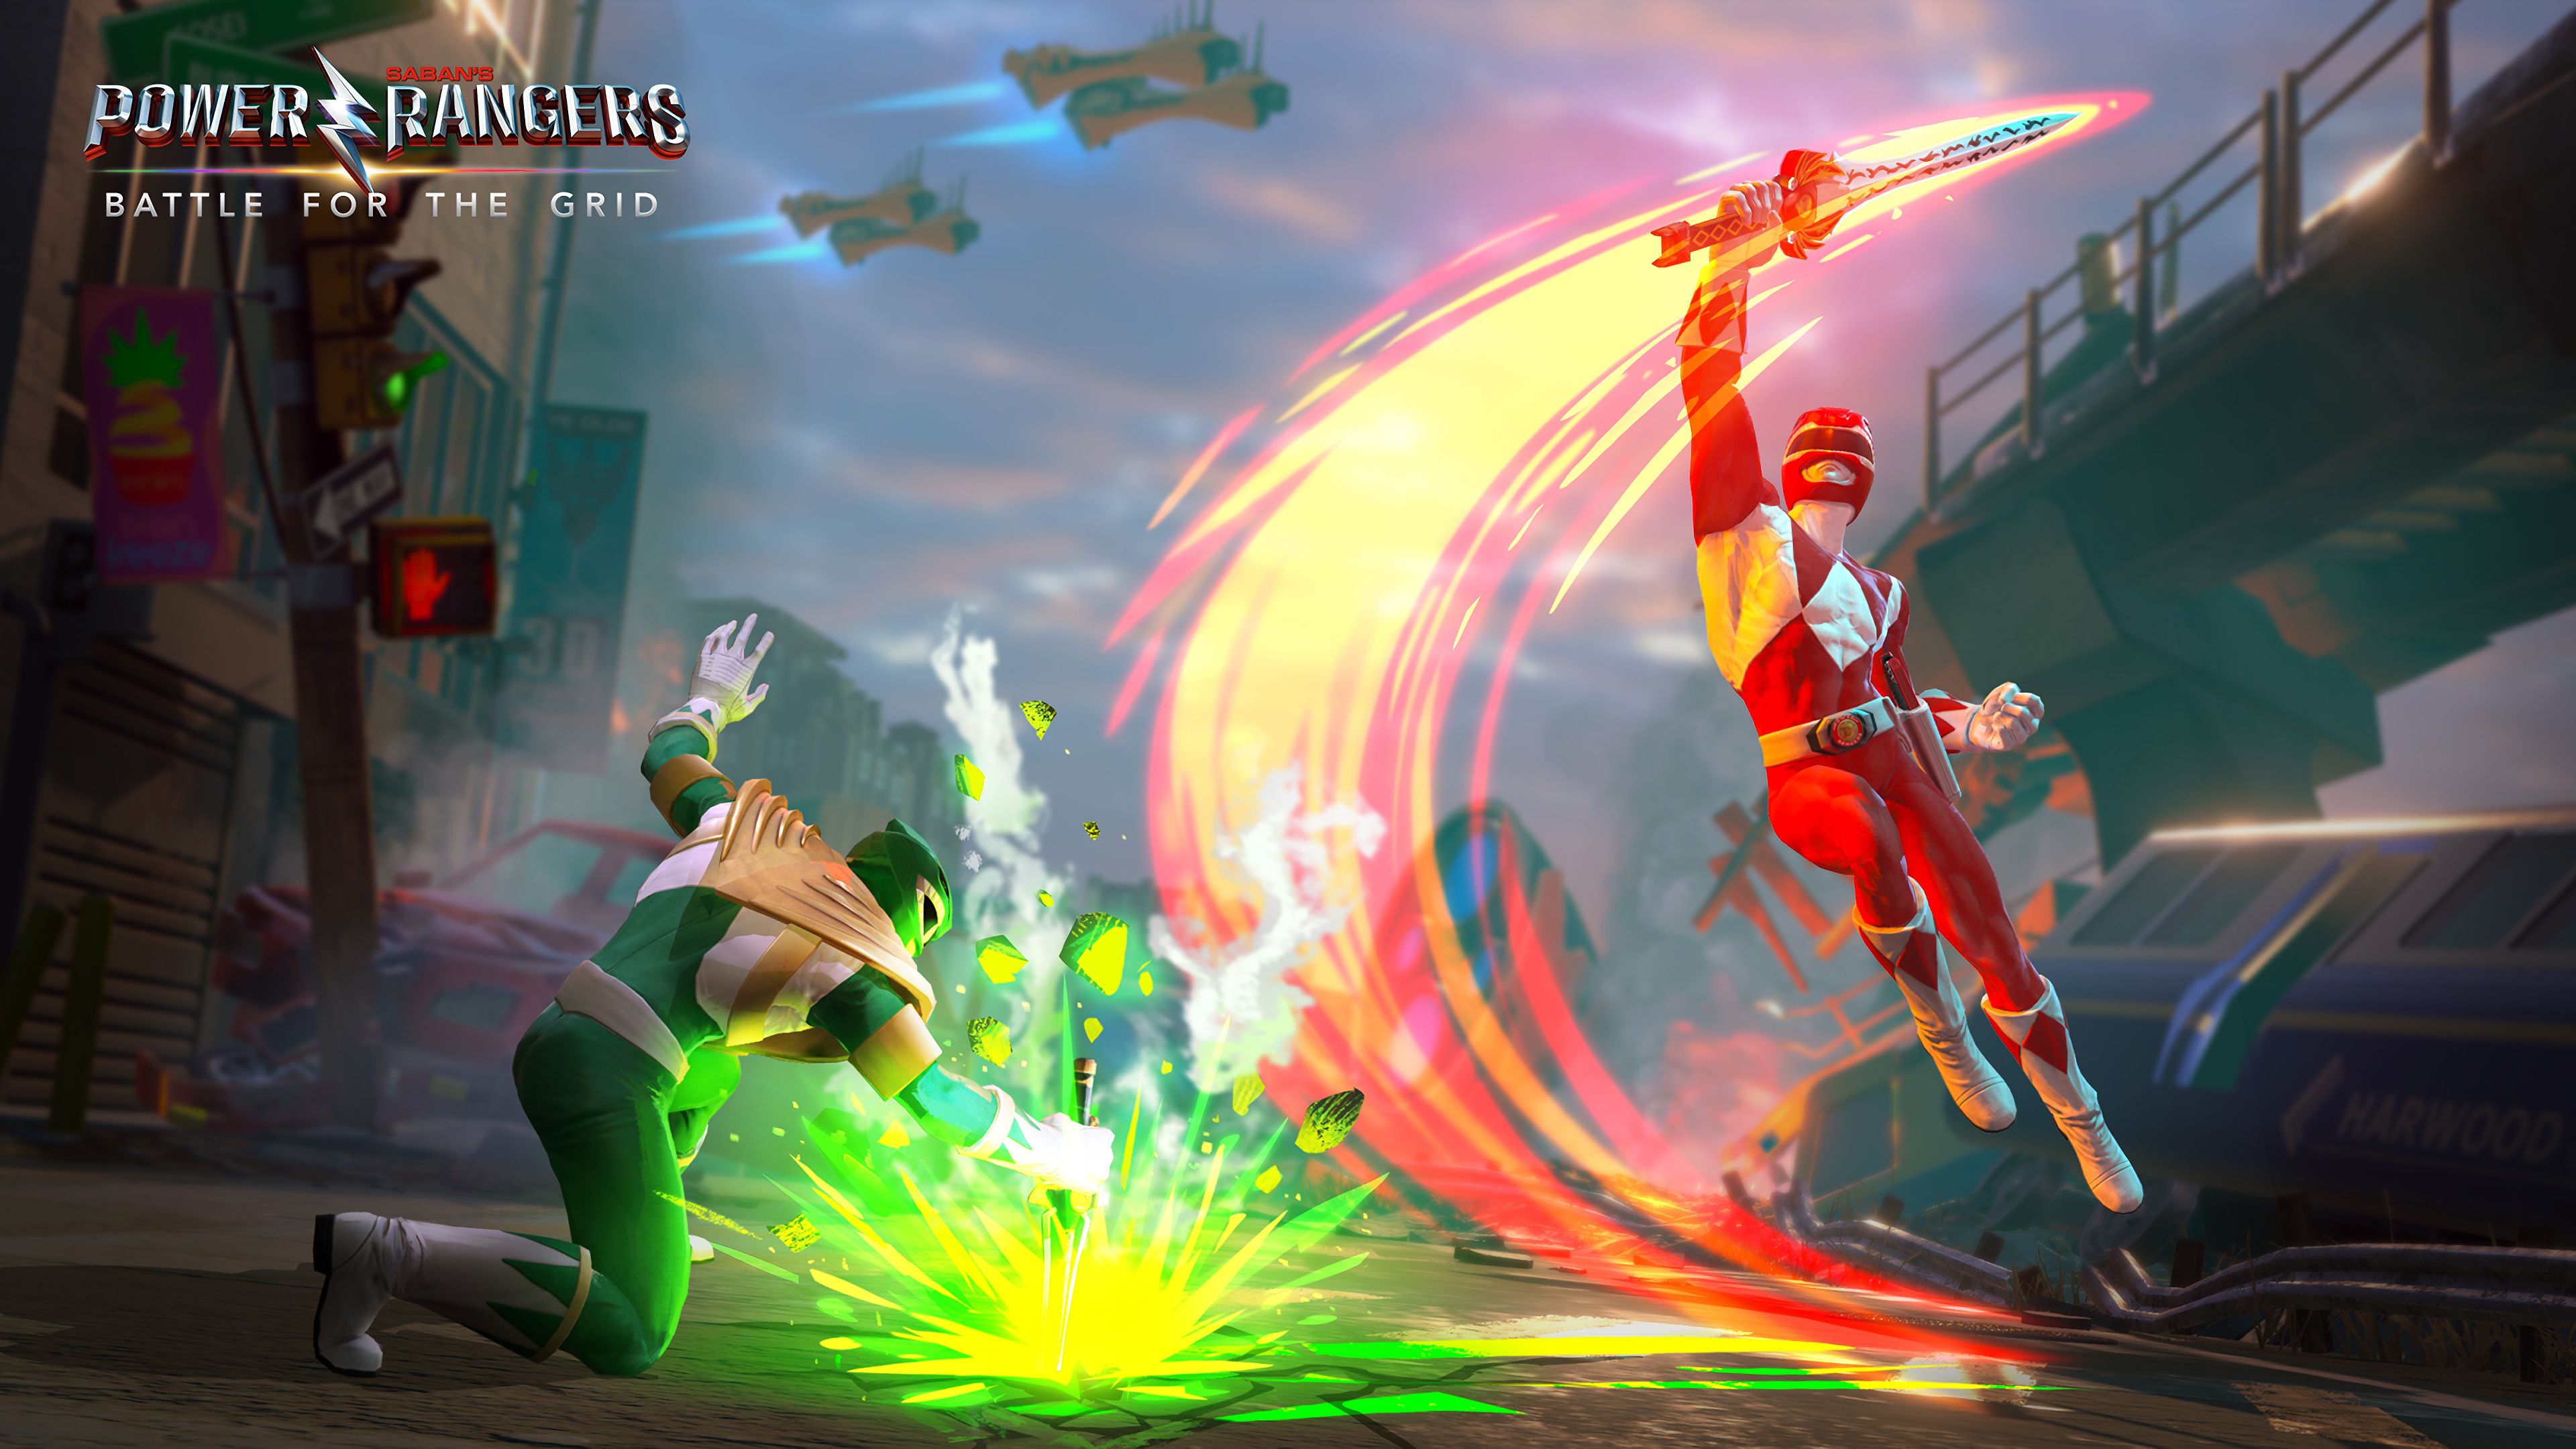 Red vs. Green Ranger Power Rangers: Battle for the Grid 4K Wallpaper